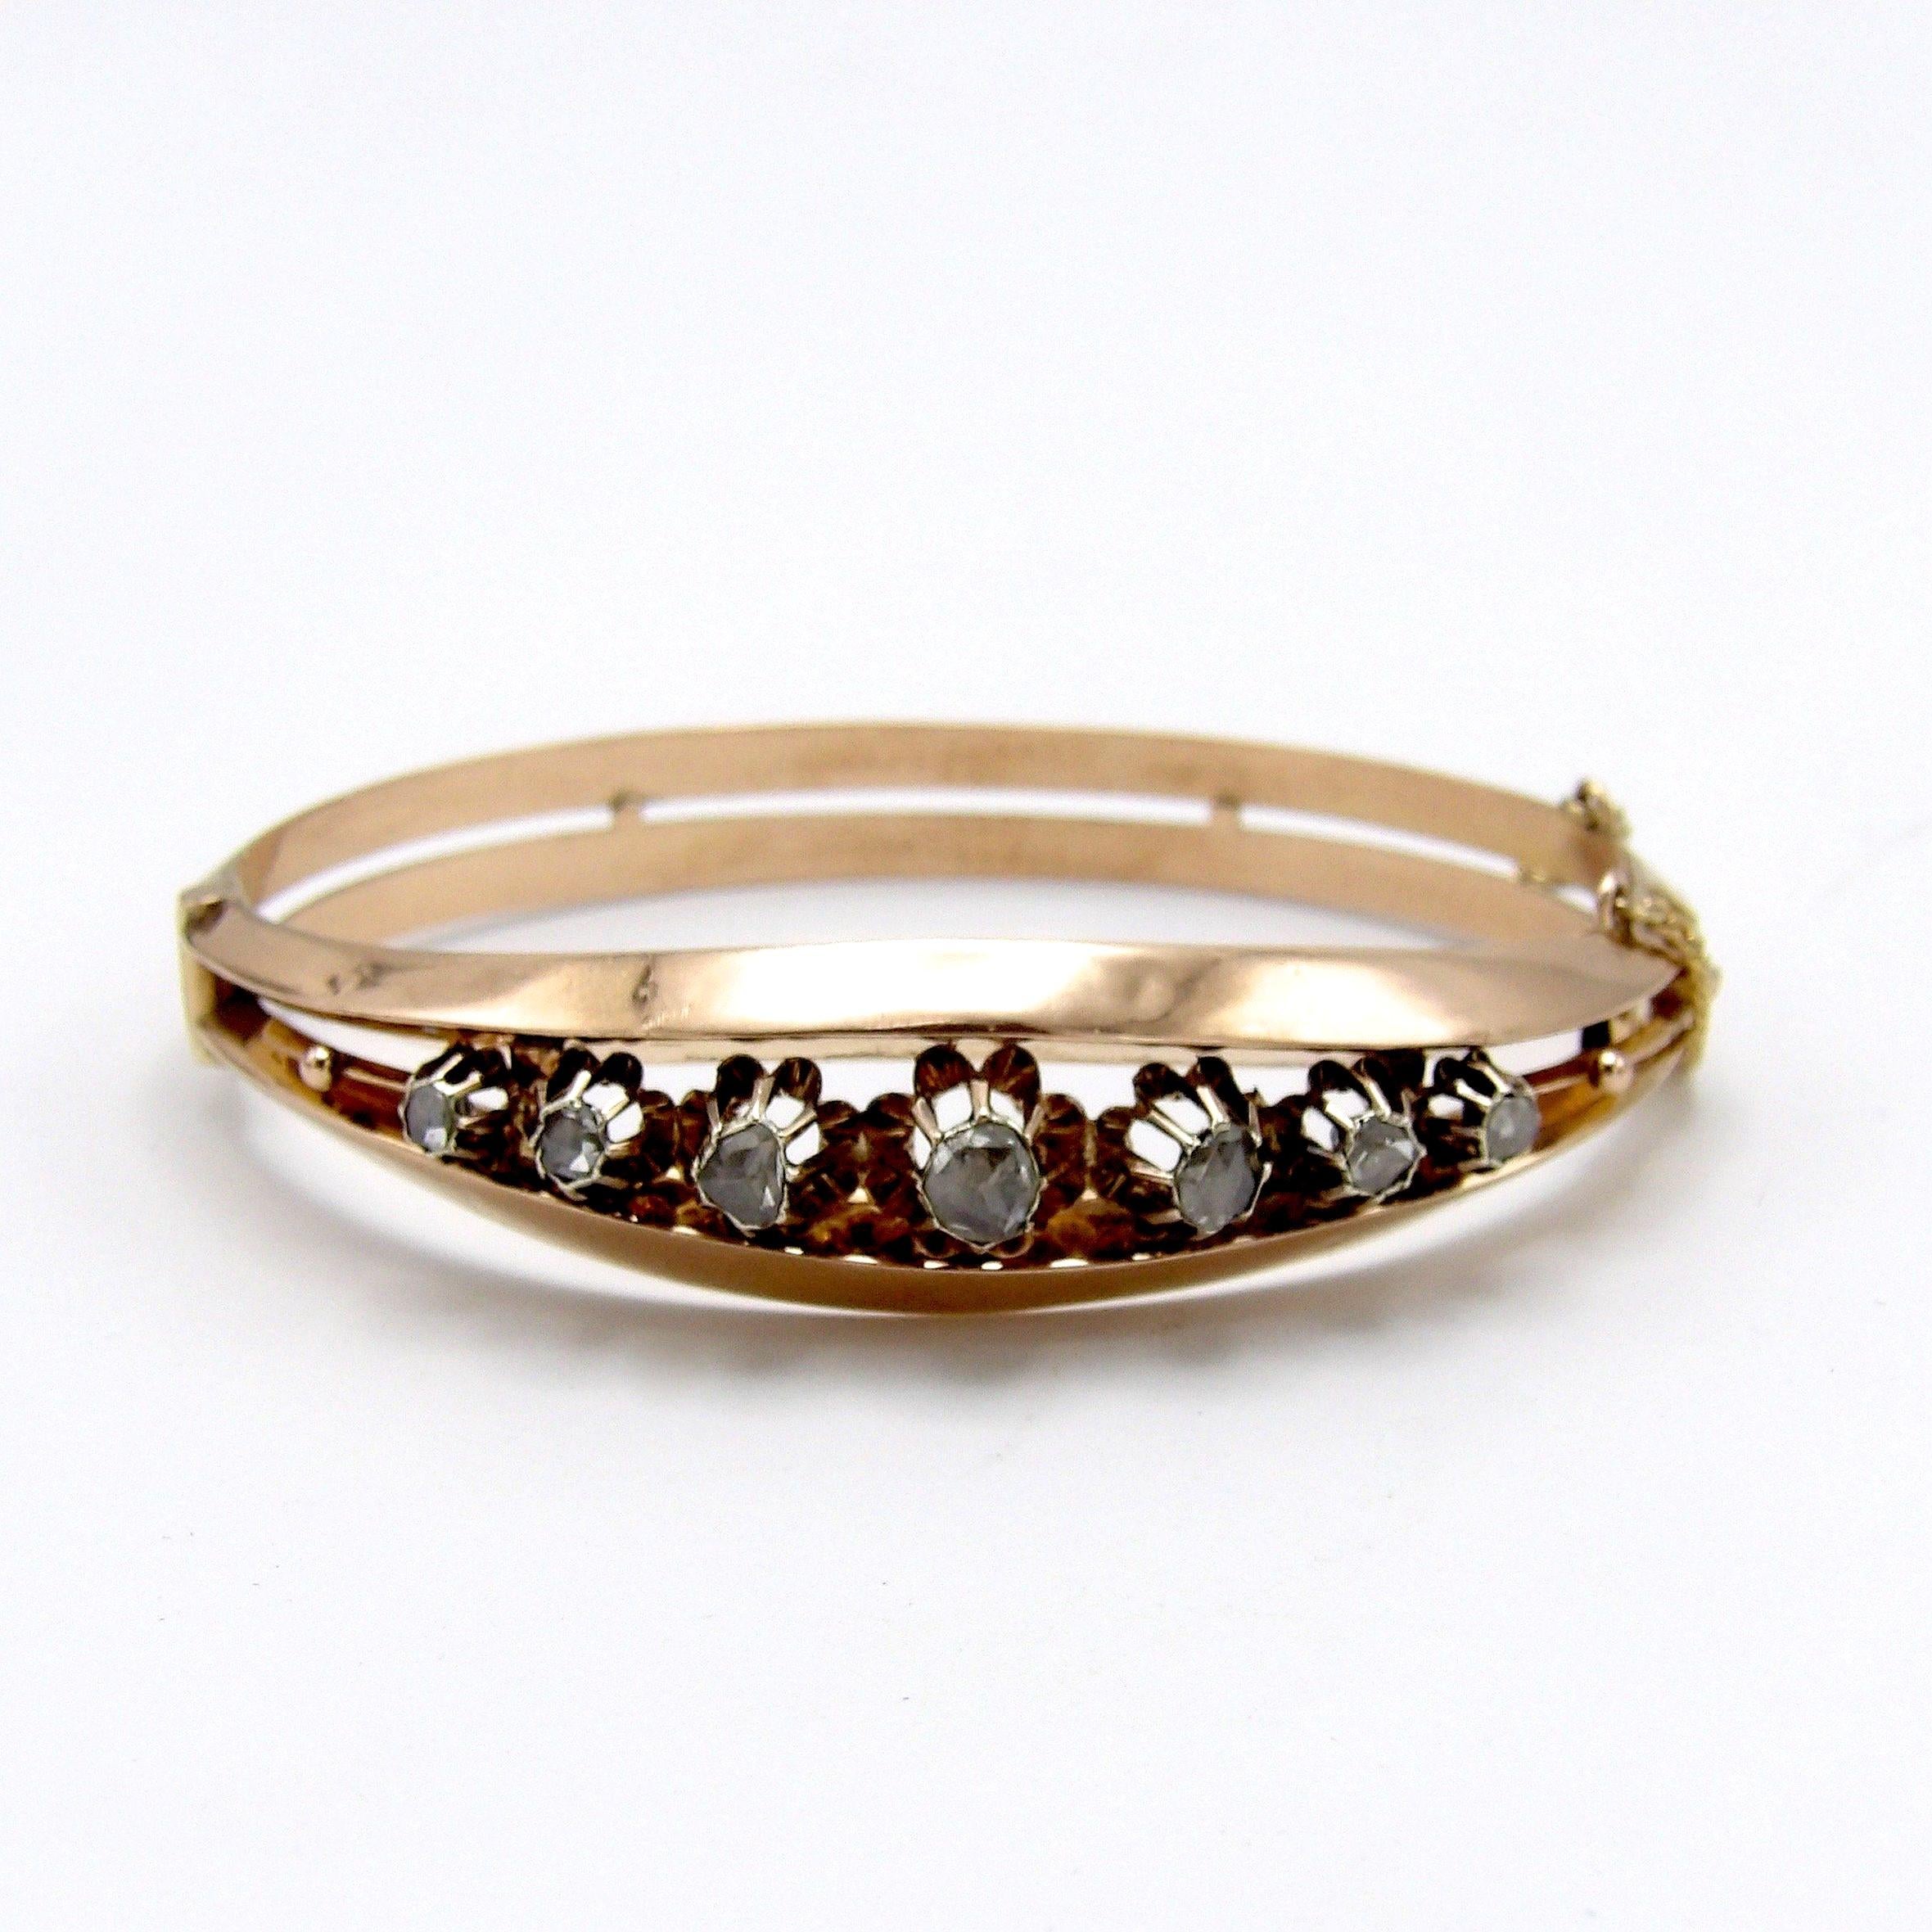 Ein schönes Armband aus Roségold und Diamanten aus der viktorianischen Ära. Dieses Schmuckstück besteht aus 7 wunderschönen Diamanten im Rosenschliff, die von der Mitte aus in absteigender Reihenfolge angeordnet sind. Der größte Diamant in der Mitte